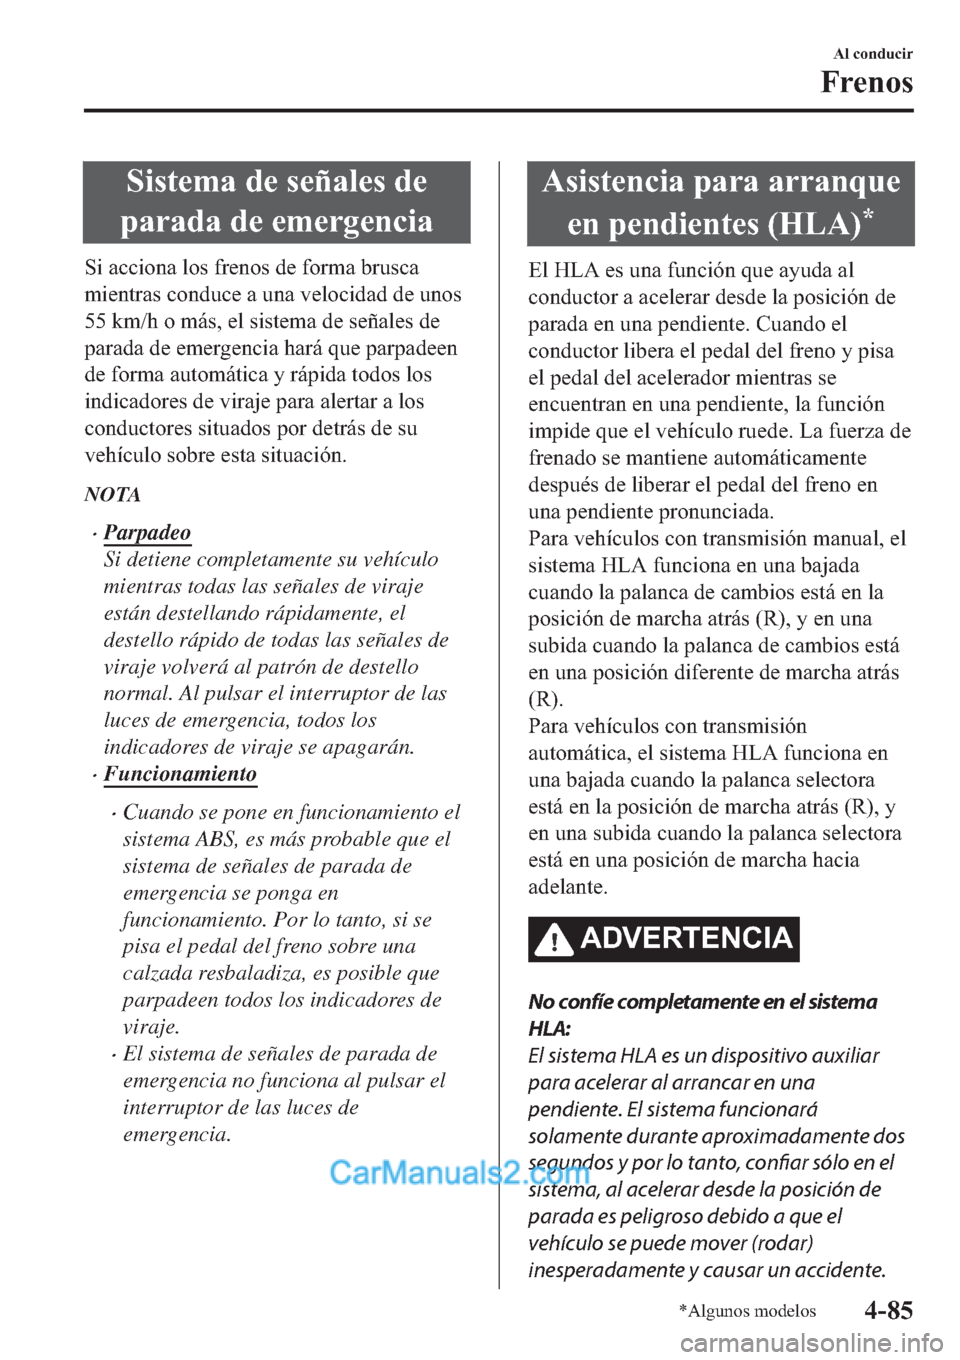 MAZDA MODEL 2 2019  Manual del propietario (in Spanish) �6�L�V�W�H�P�D��G�H��V�H�x�D�O�H�V��G�H
�S�D�U�D�G�D��G�H��H�P�H�U�J�H�Q�F�L�D
�6�L��D�F�F�L�R�Q�D��O�R�V��I�U�H�Q�R�V��G�H��I�R�U�P�D��E�U�X�V�F�D
�P�L�H�Q�W�U�D�V��F�R�Q�G�X�F�H��D��X�